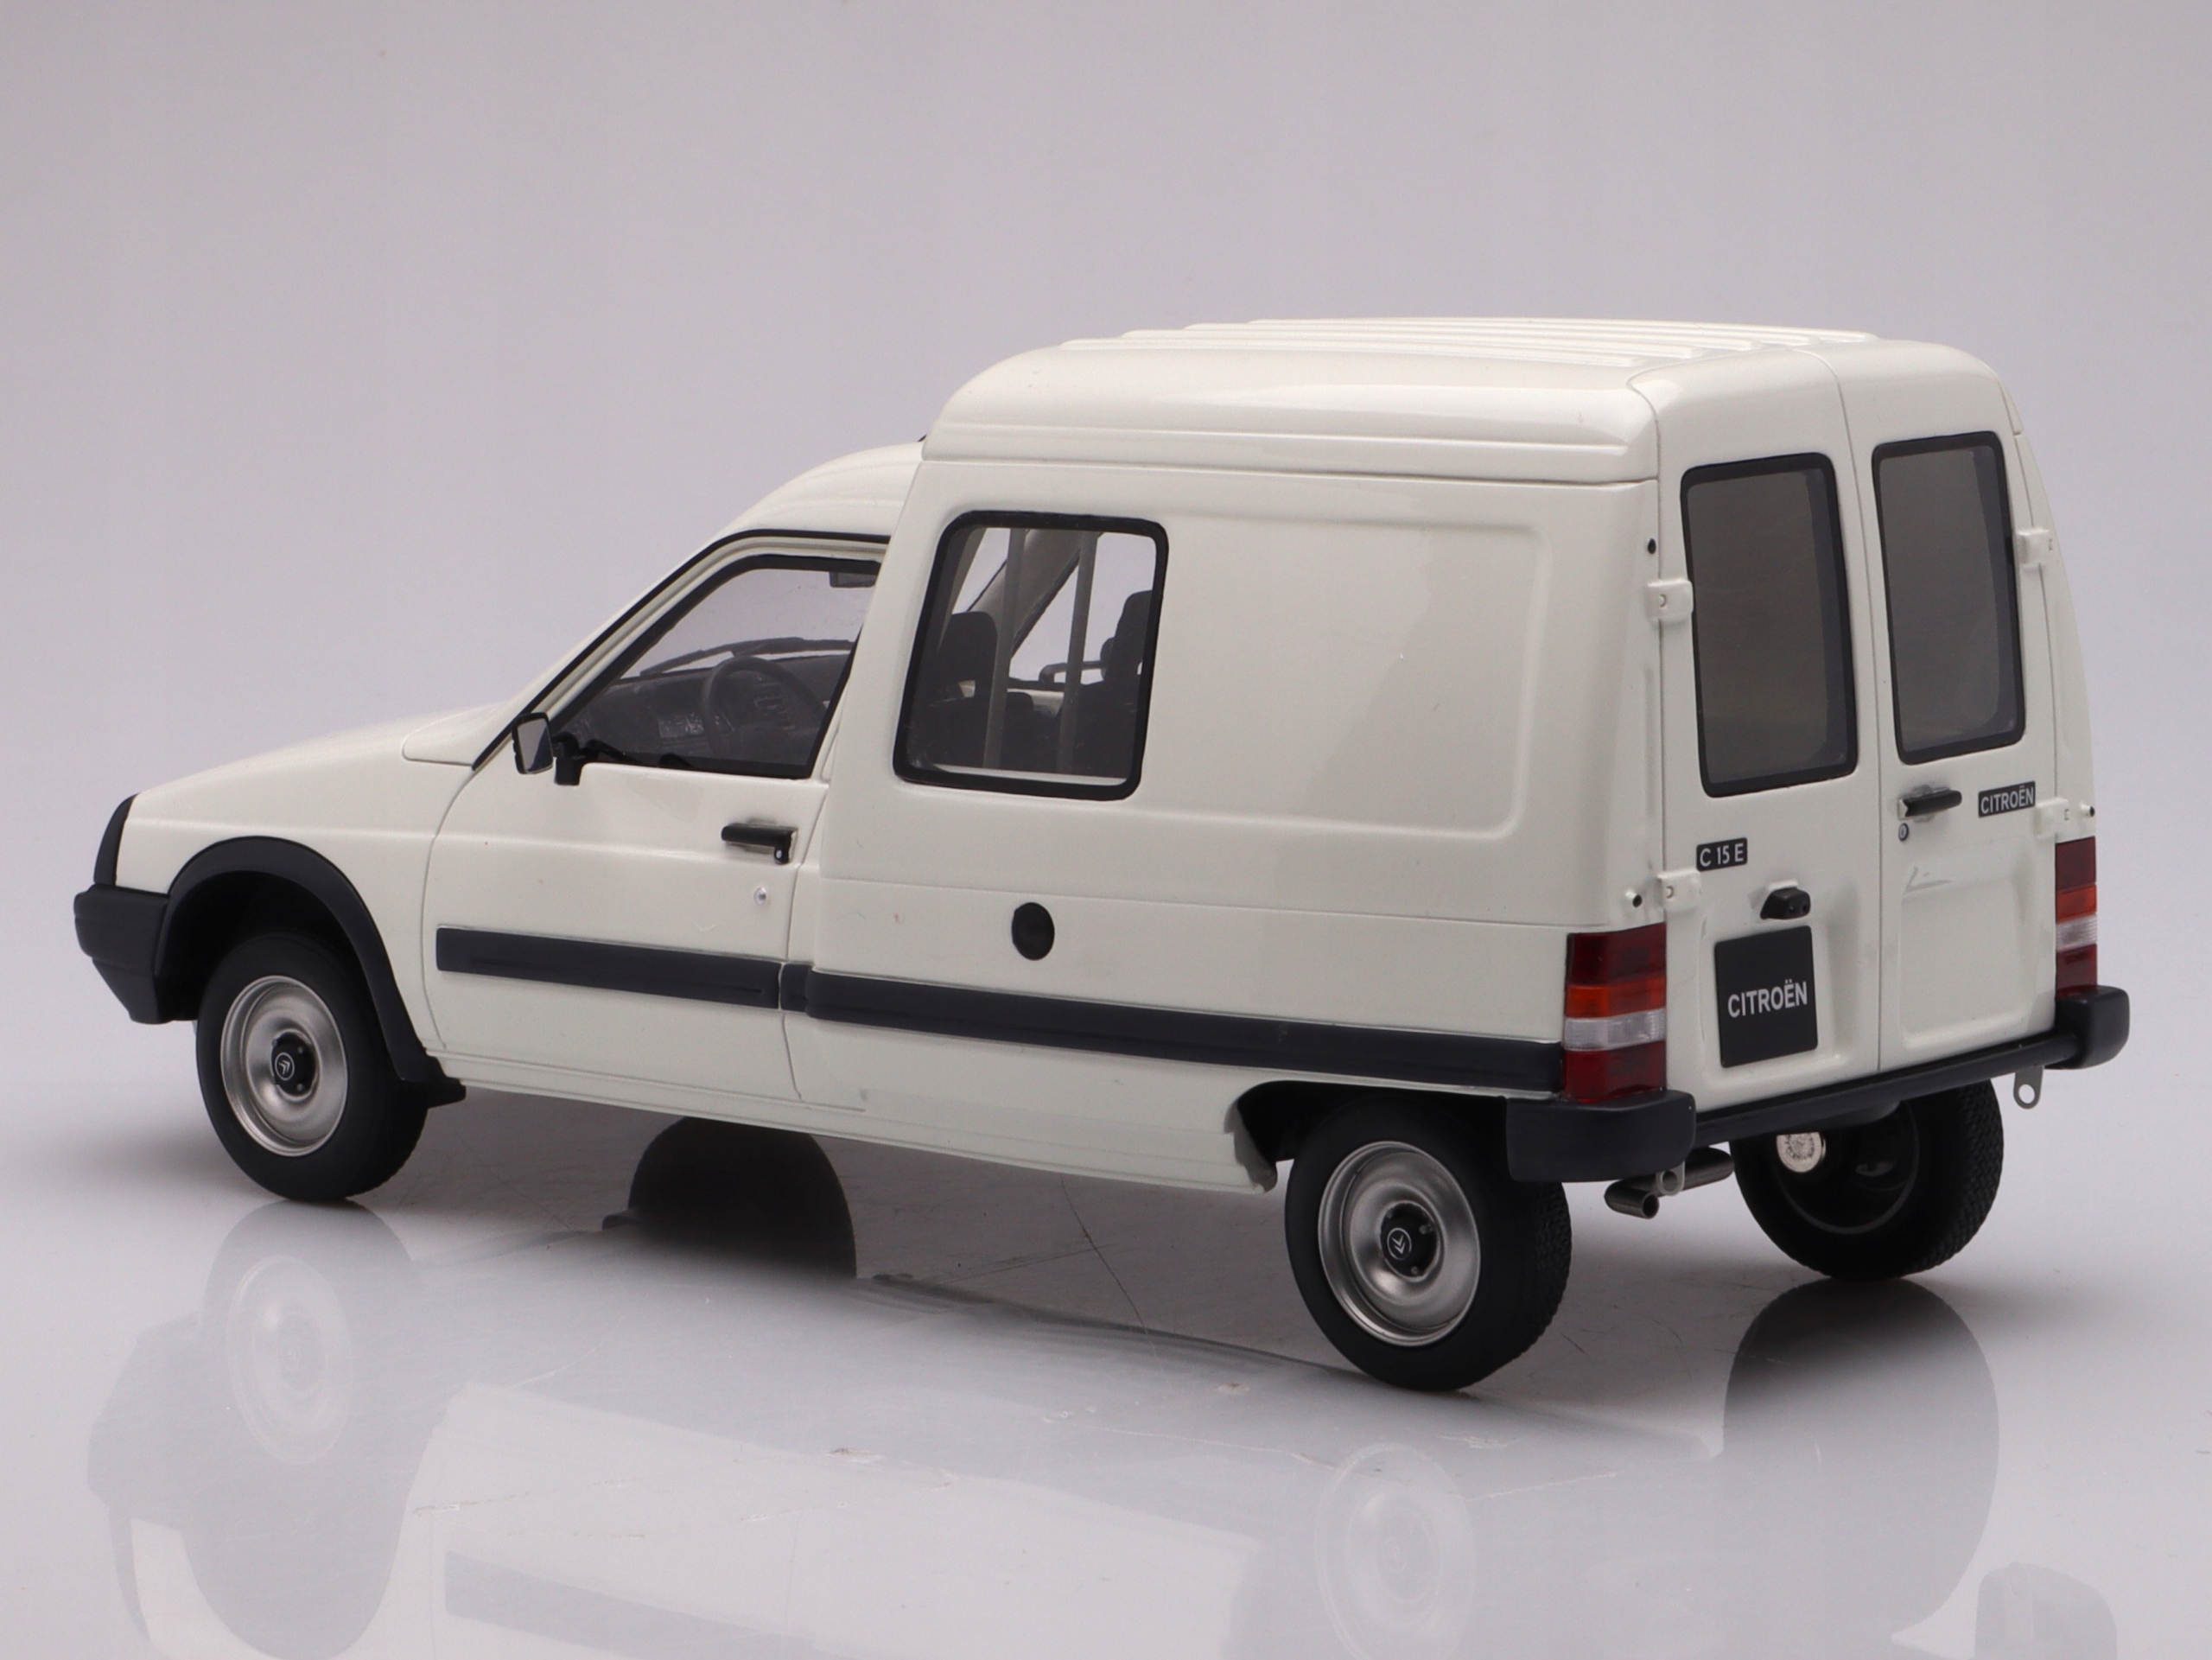 Citroën C15 E Blanco Banquise EWP 1990 1:18 OTTO-MOBILE OT956 LIMITED  EDITION 2000 PIEZAS 1:18 – COCHES ESCALA 1:18